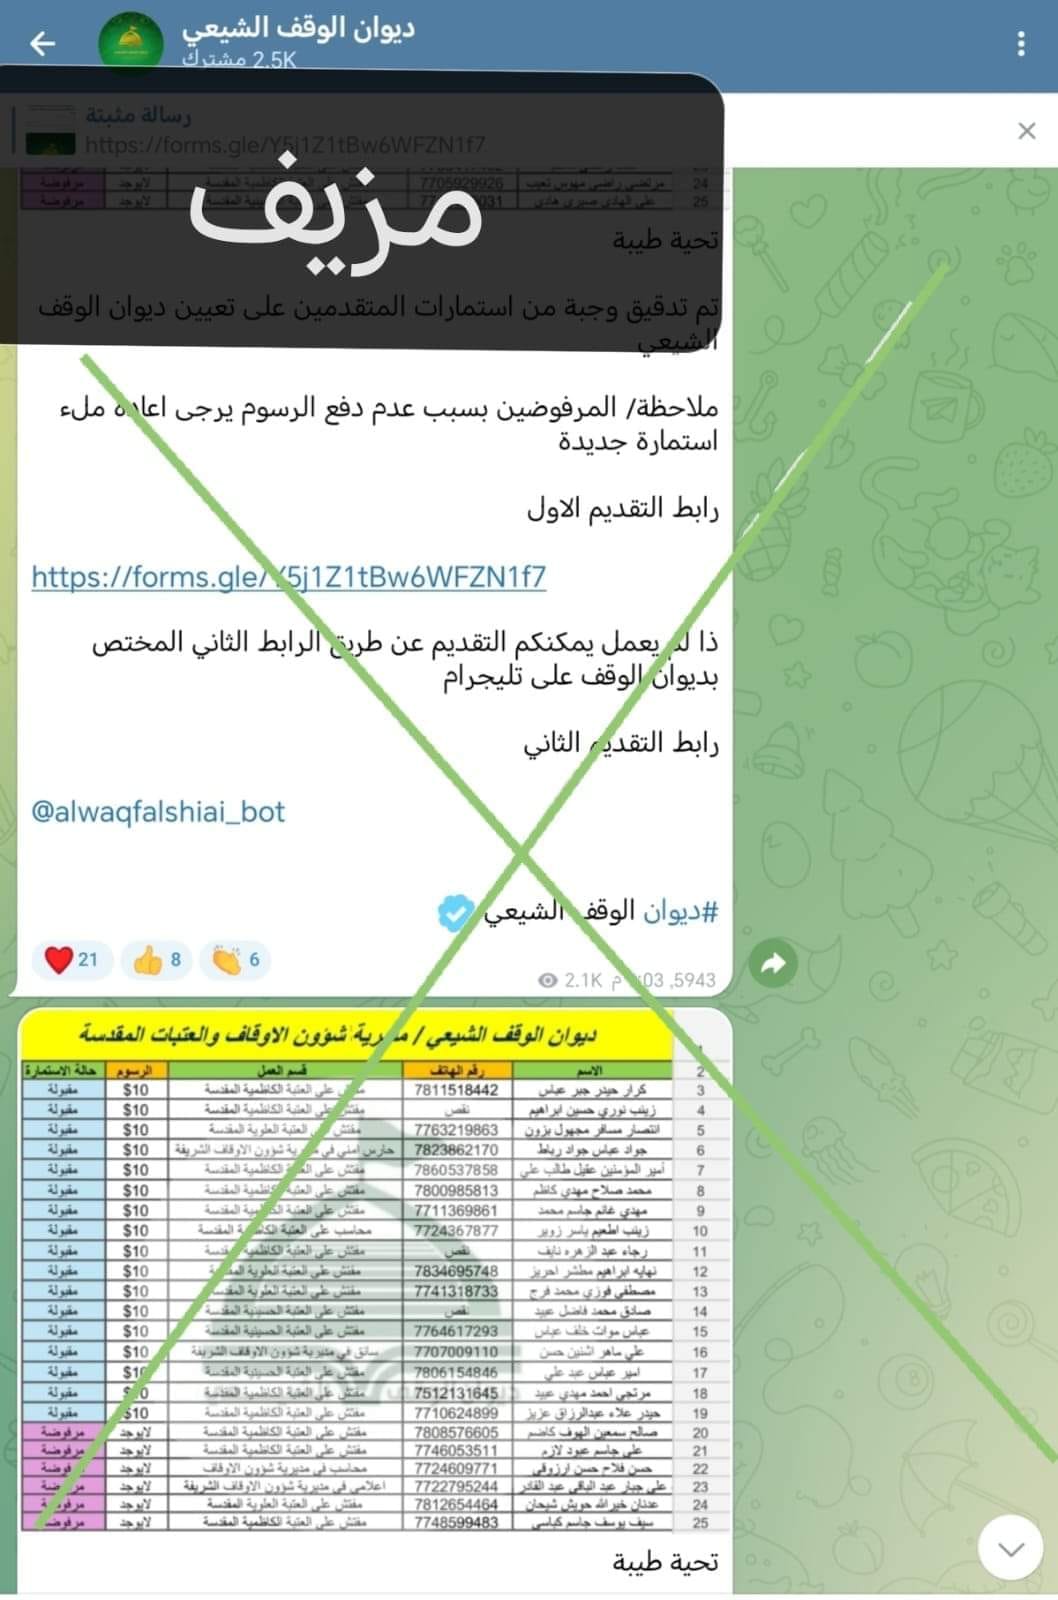 الوقف الشيعي يحذر من قناة مزيفة تنتحل صفته واسمه على تطبيق تليكرام 